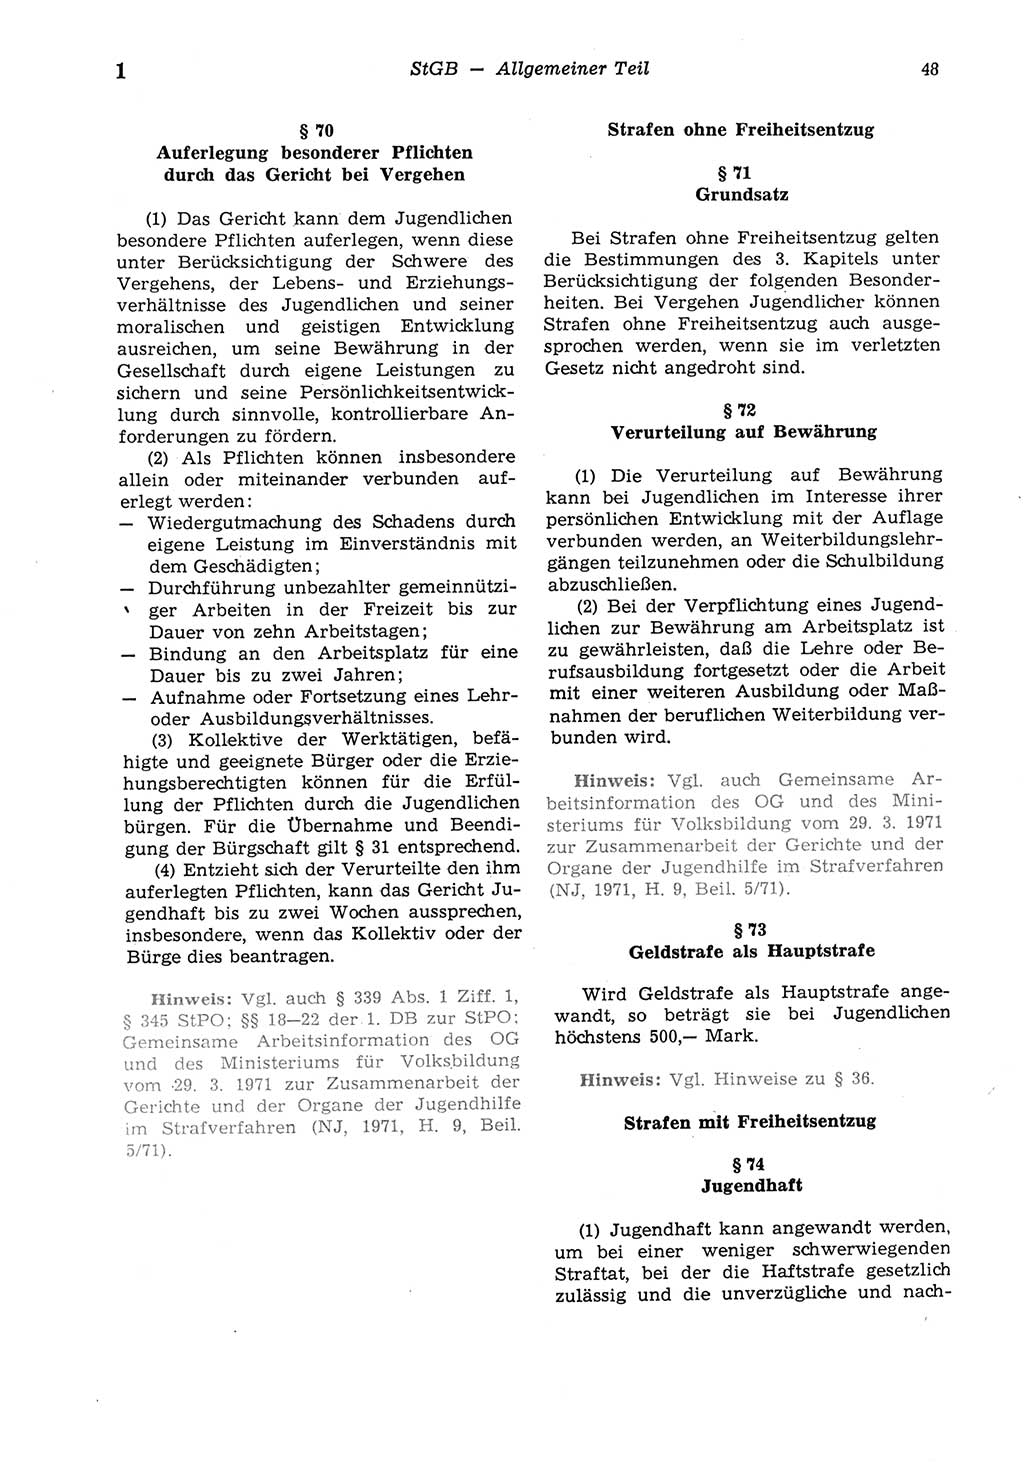 Strafgesetzbuch (StGB) der Deutschen Demokratischen Republik (DDR) und angrenzende Gesetze und Bestimmungen 1975, Seite 48 (StGB DDR Ges. Best. 1975, S. 48)